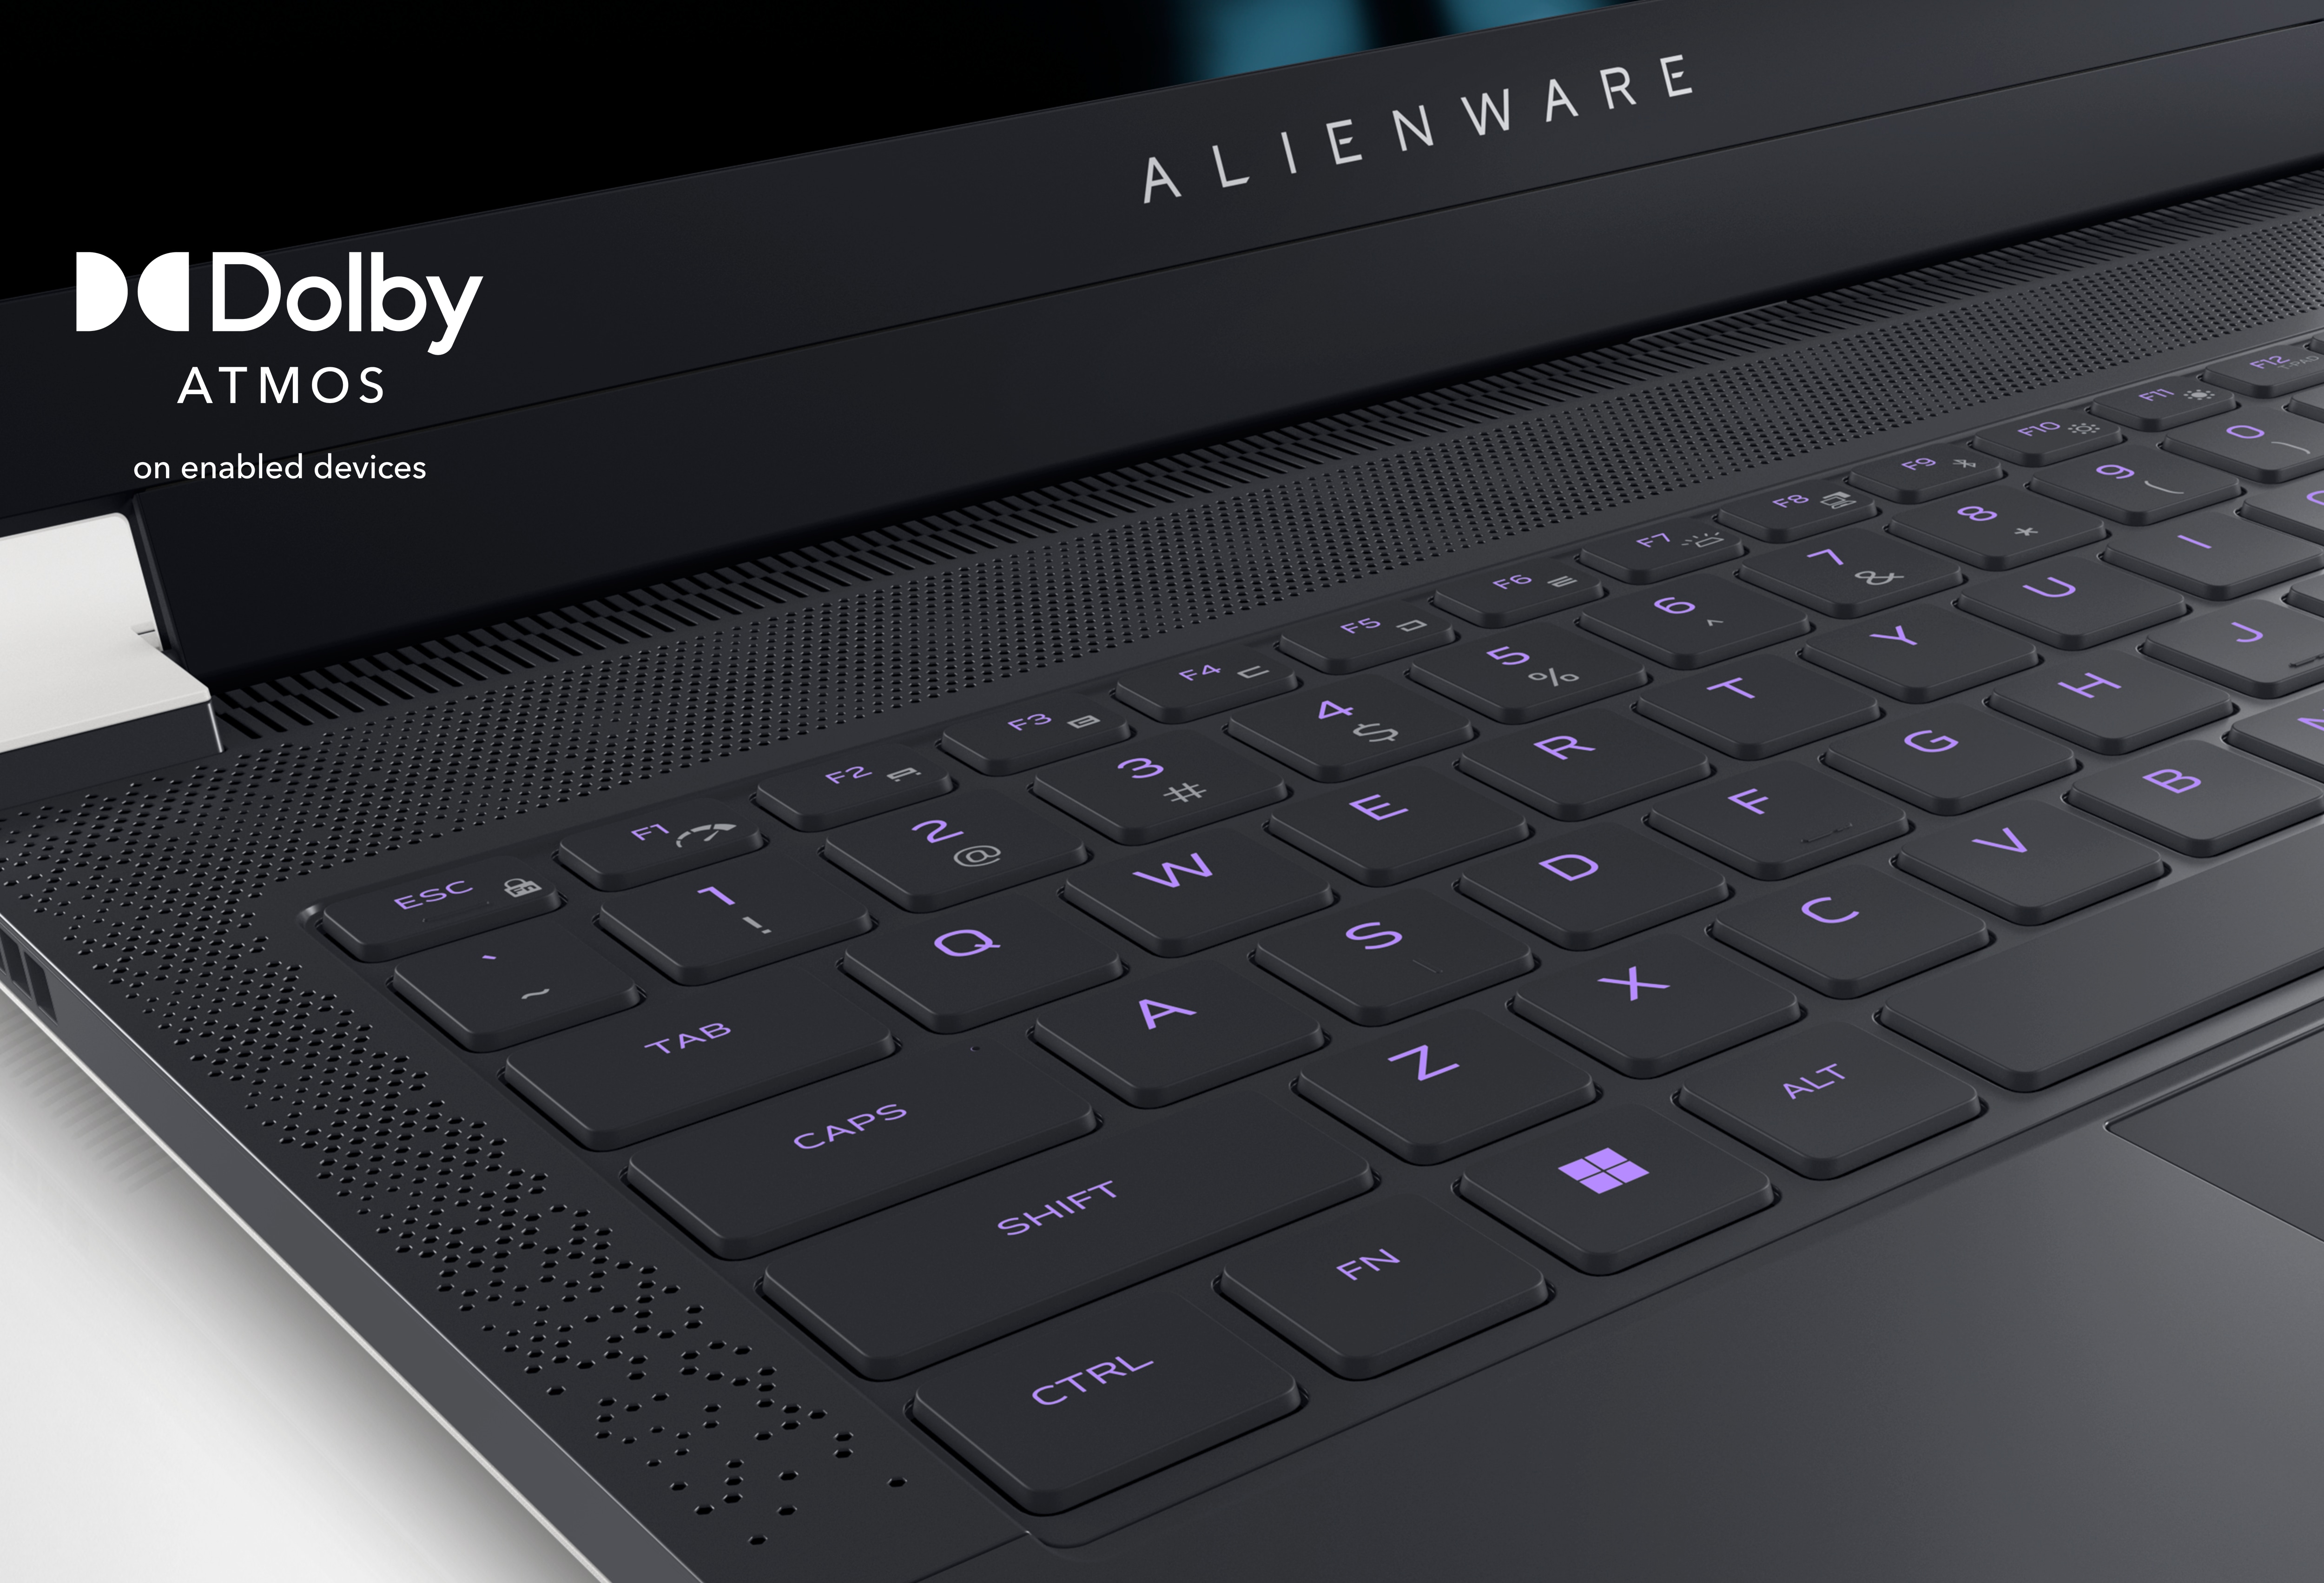 Image d’un ordinateur portable de jeu Dell Alienware X14 montrant le clavier du produit et ses lumières violettes.